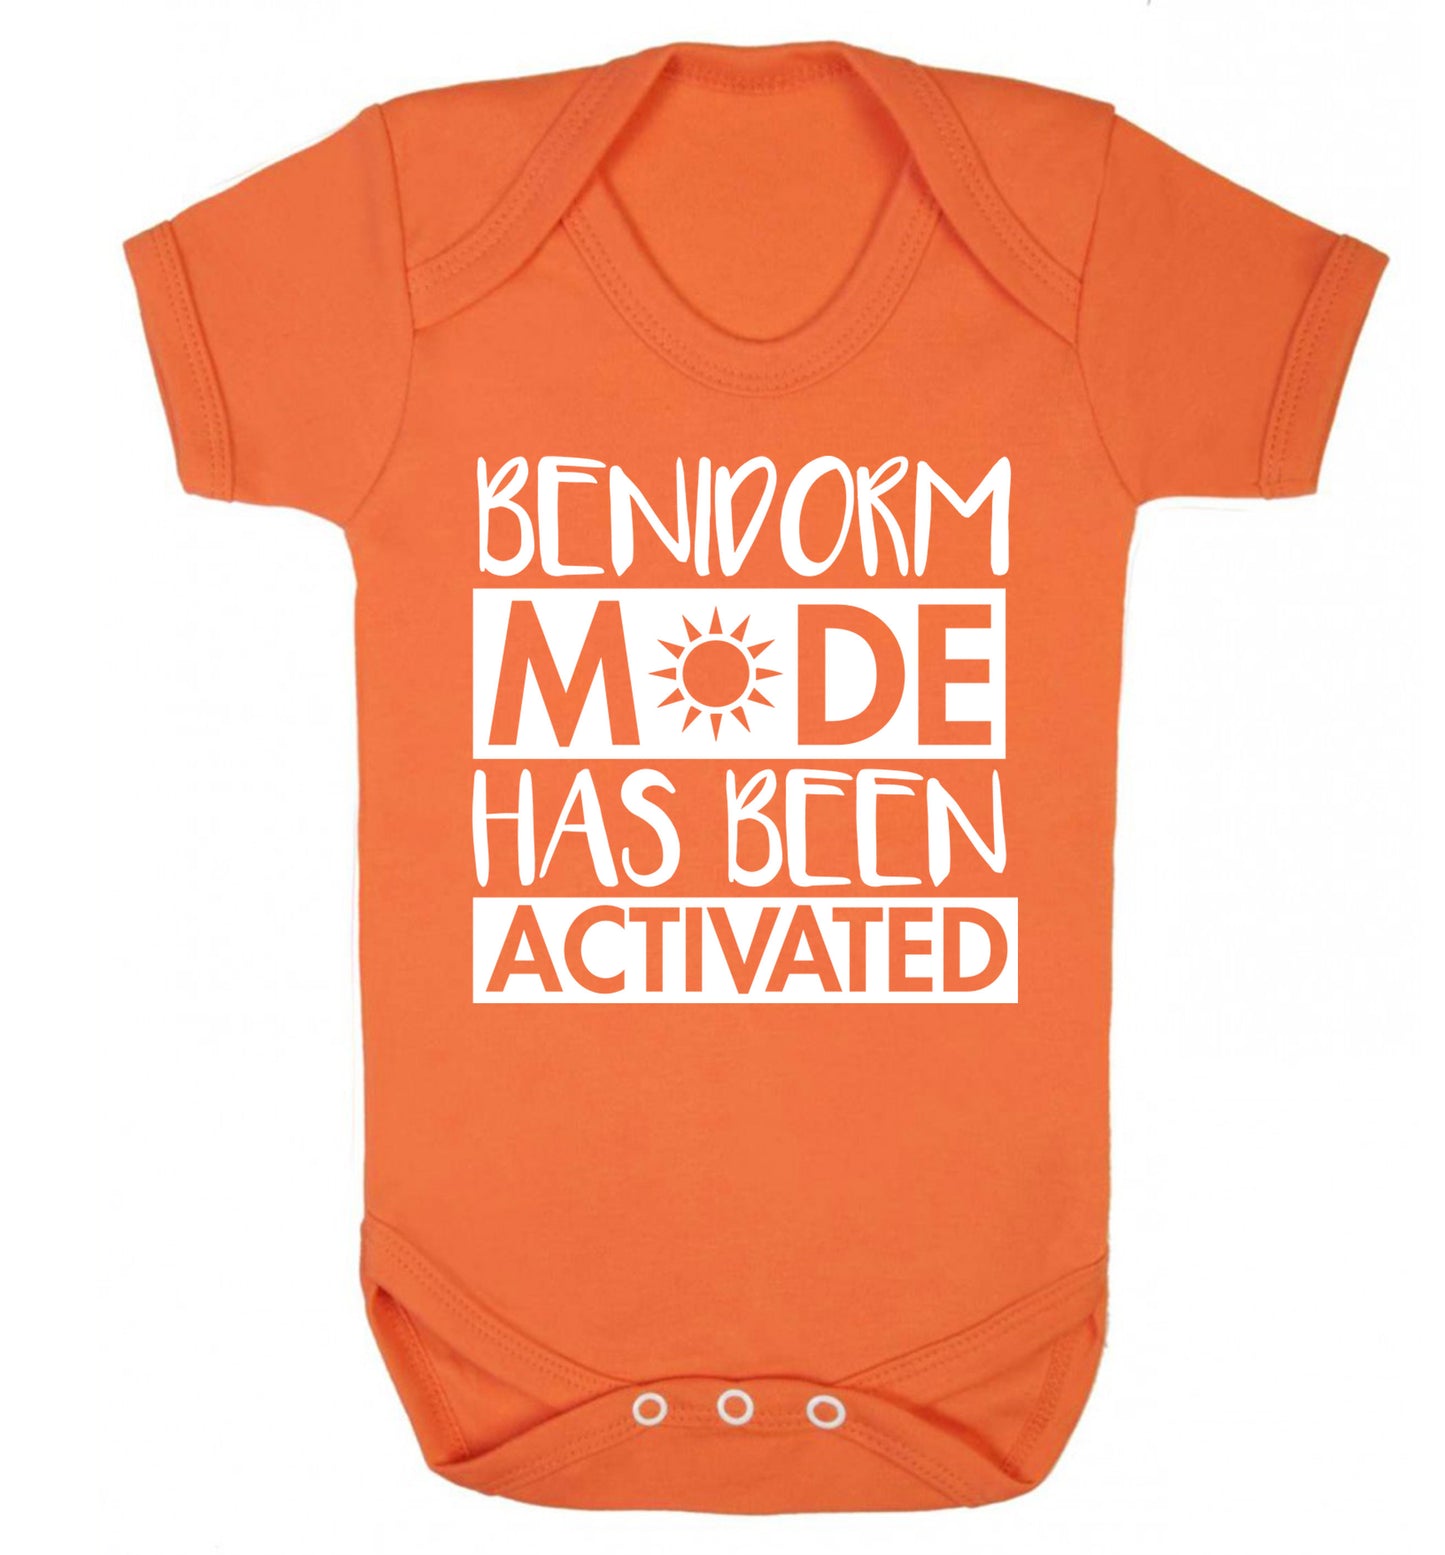 Benidorm mode has been activated Baby Vest orange 18-24 months